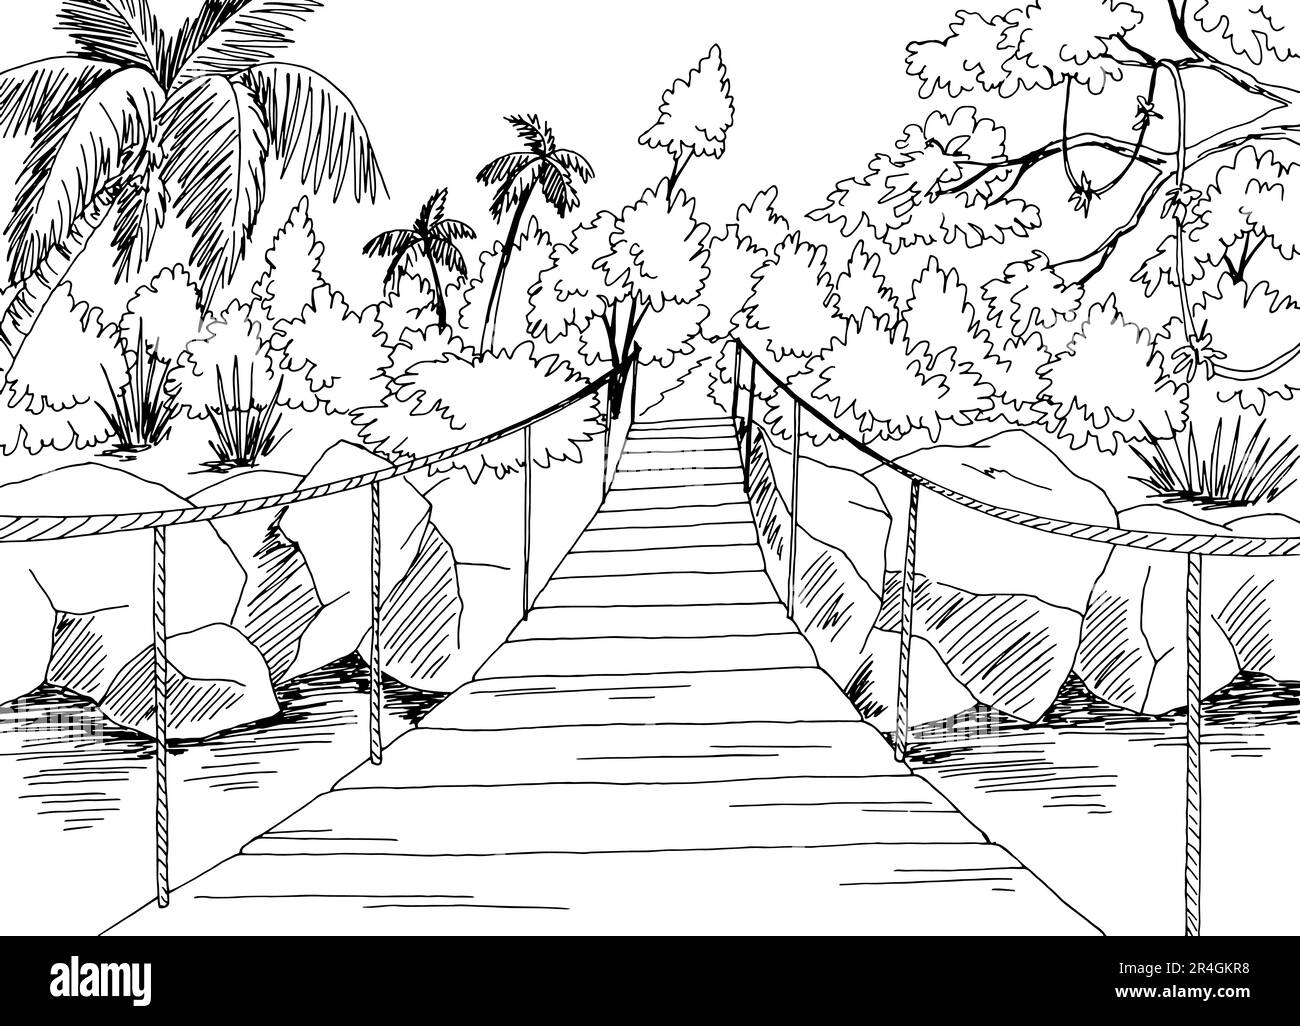 Suspension bridge in the jungle graphic black white landscape sketch illustration vector Stock Vector